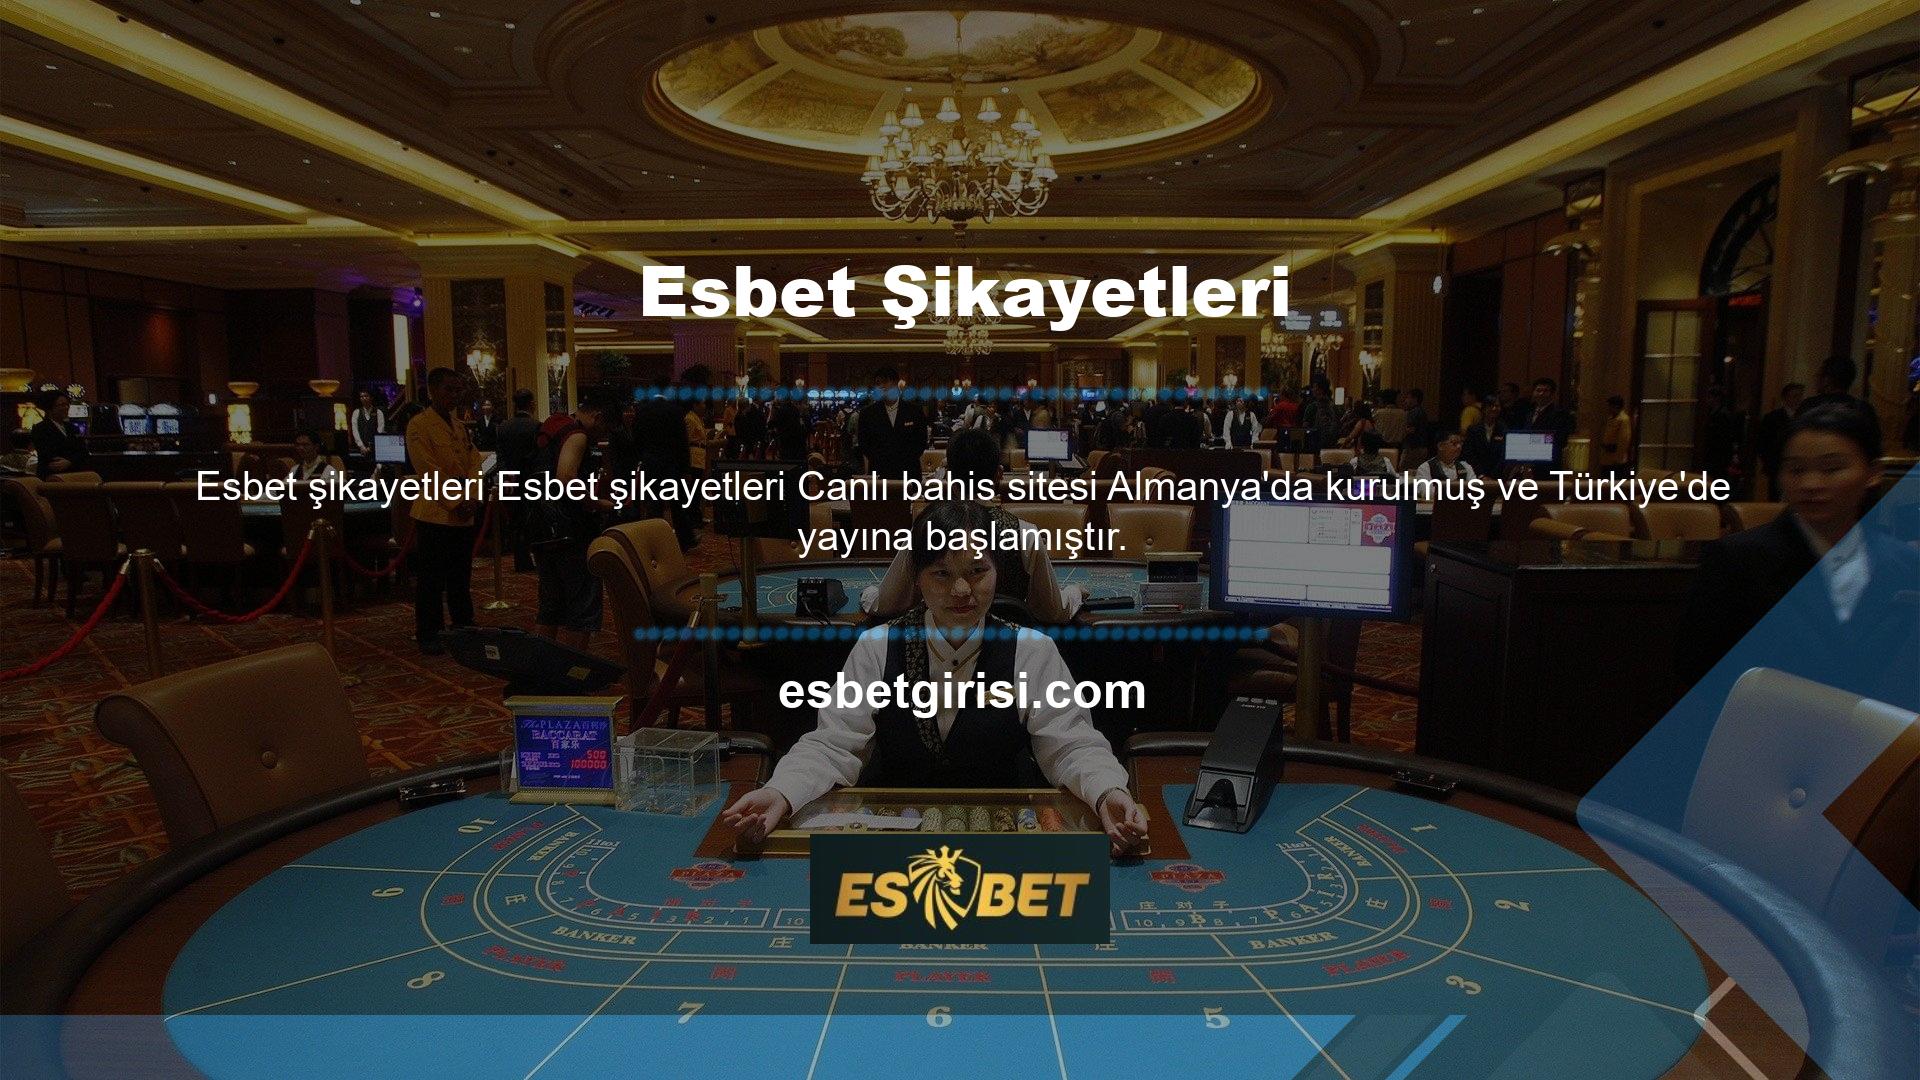 Türkçe dil paketi destekli siteler, bahis oyunları ve casino oyunları başta olmak üzere özel slot oyunlarıyla oyunculara aktif ve kesintisiz bir hizmet sunmaktadır